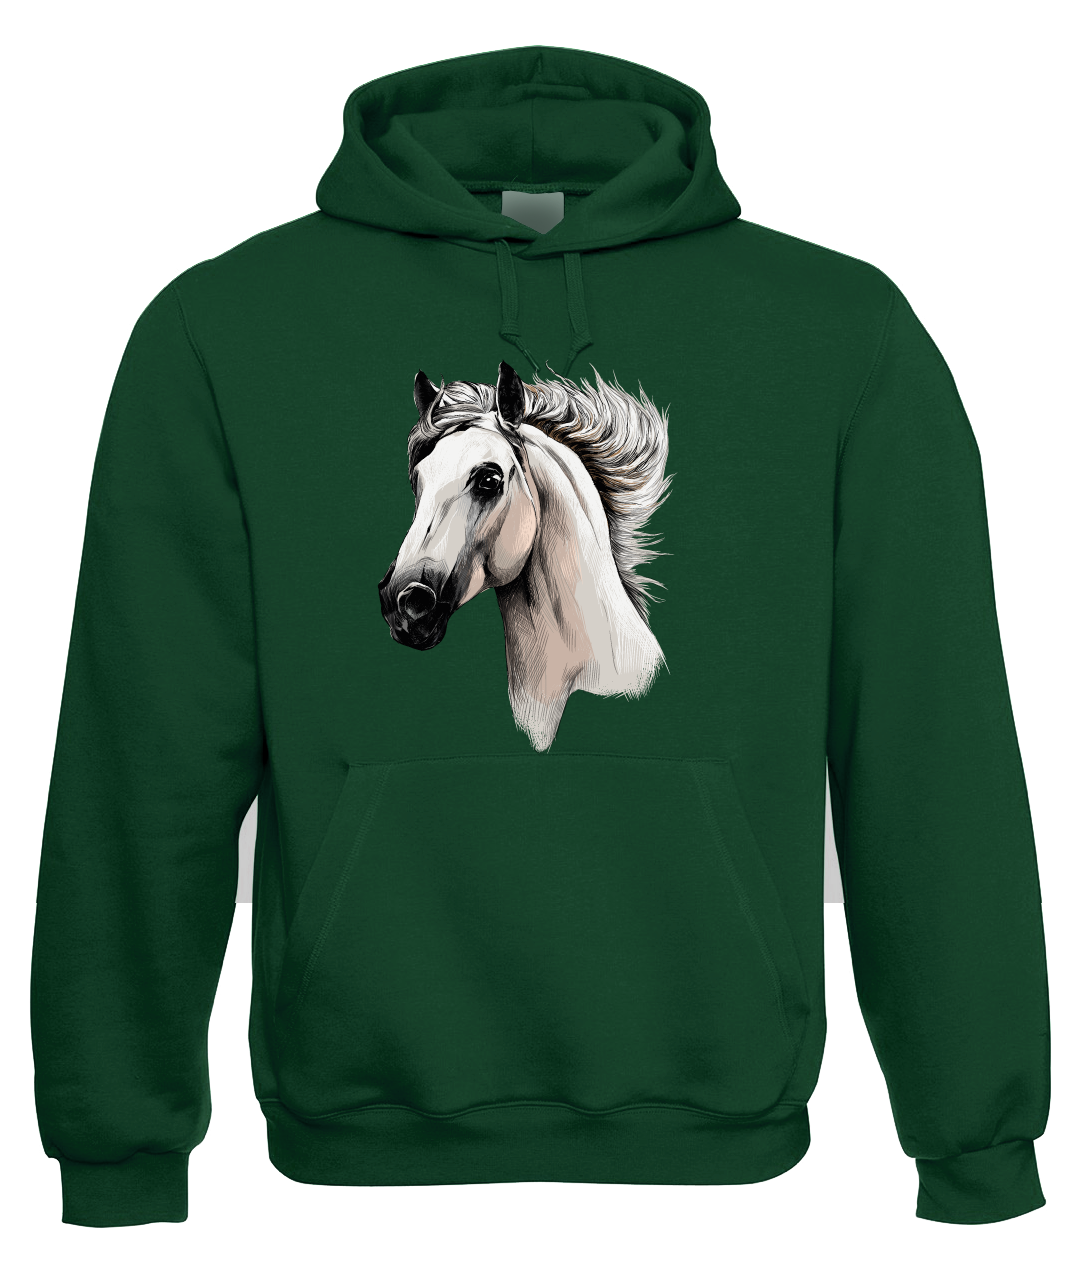 Mikina s koněm - Bělouš Velikost: M, Barva: Zelená lahvová